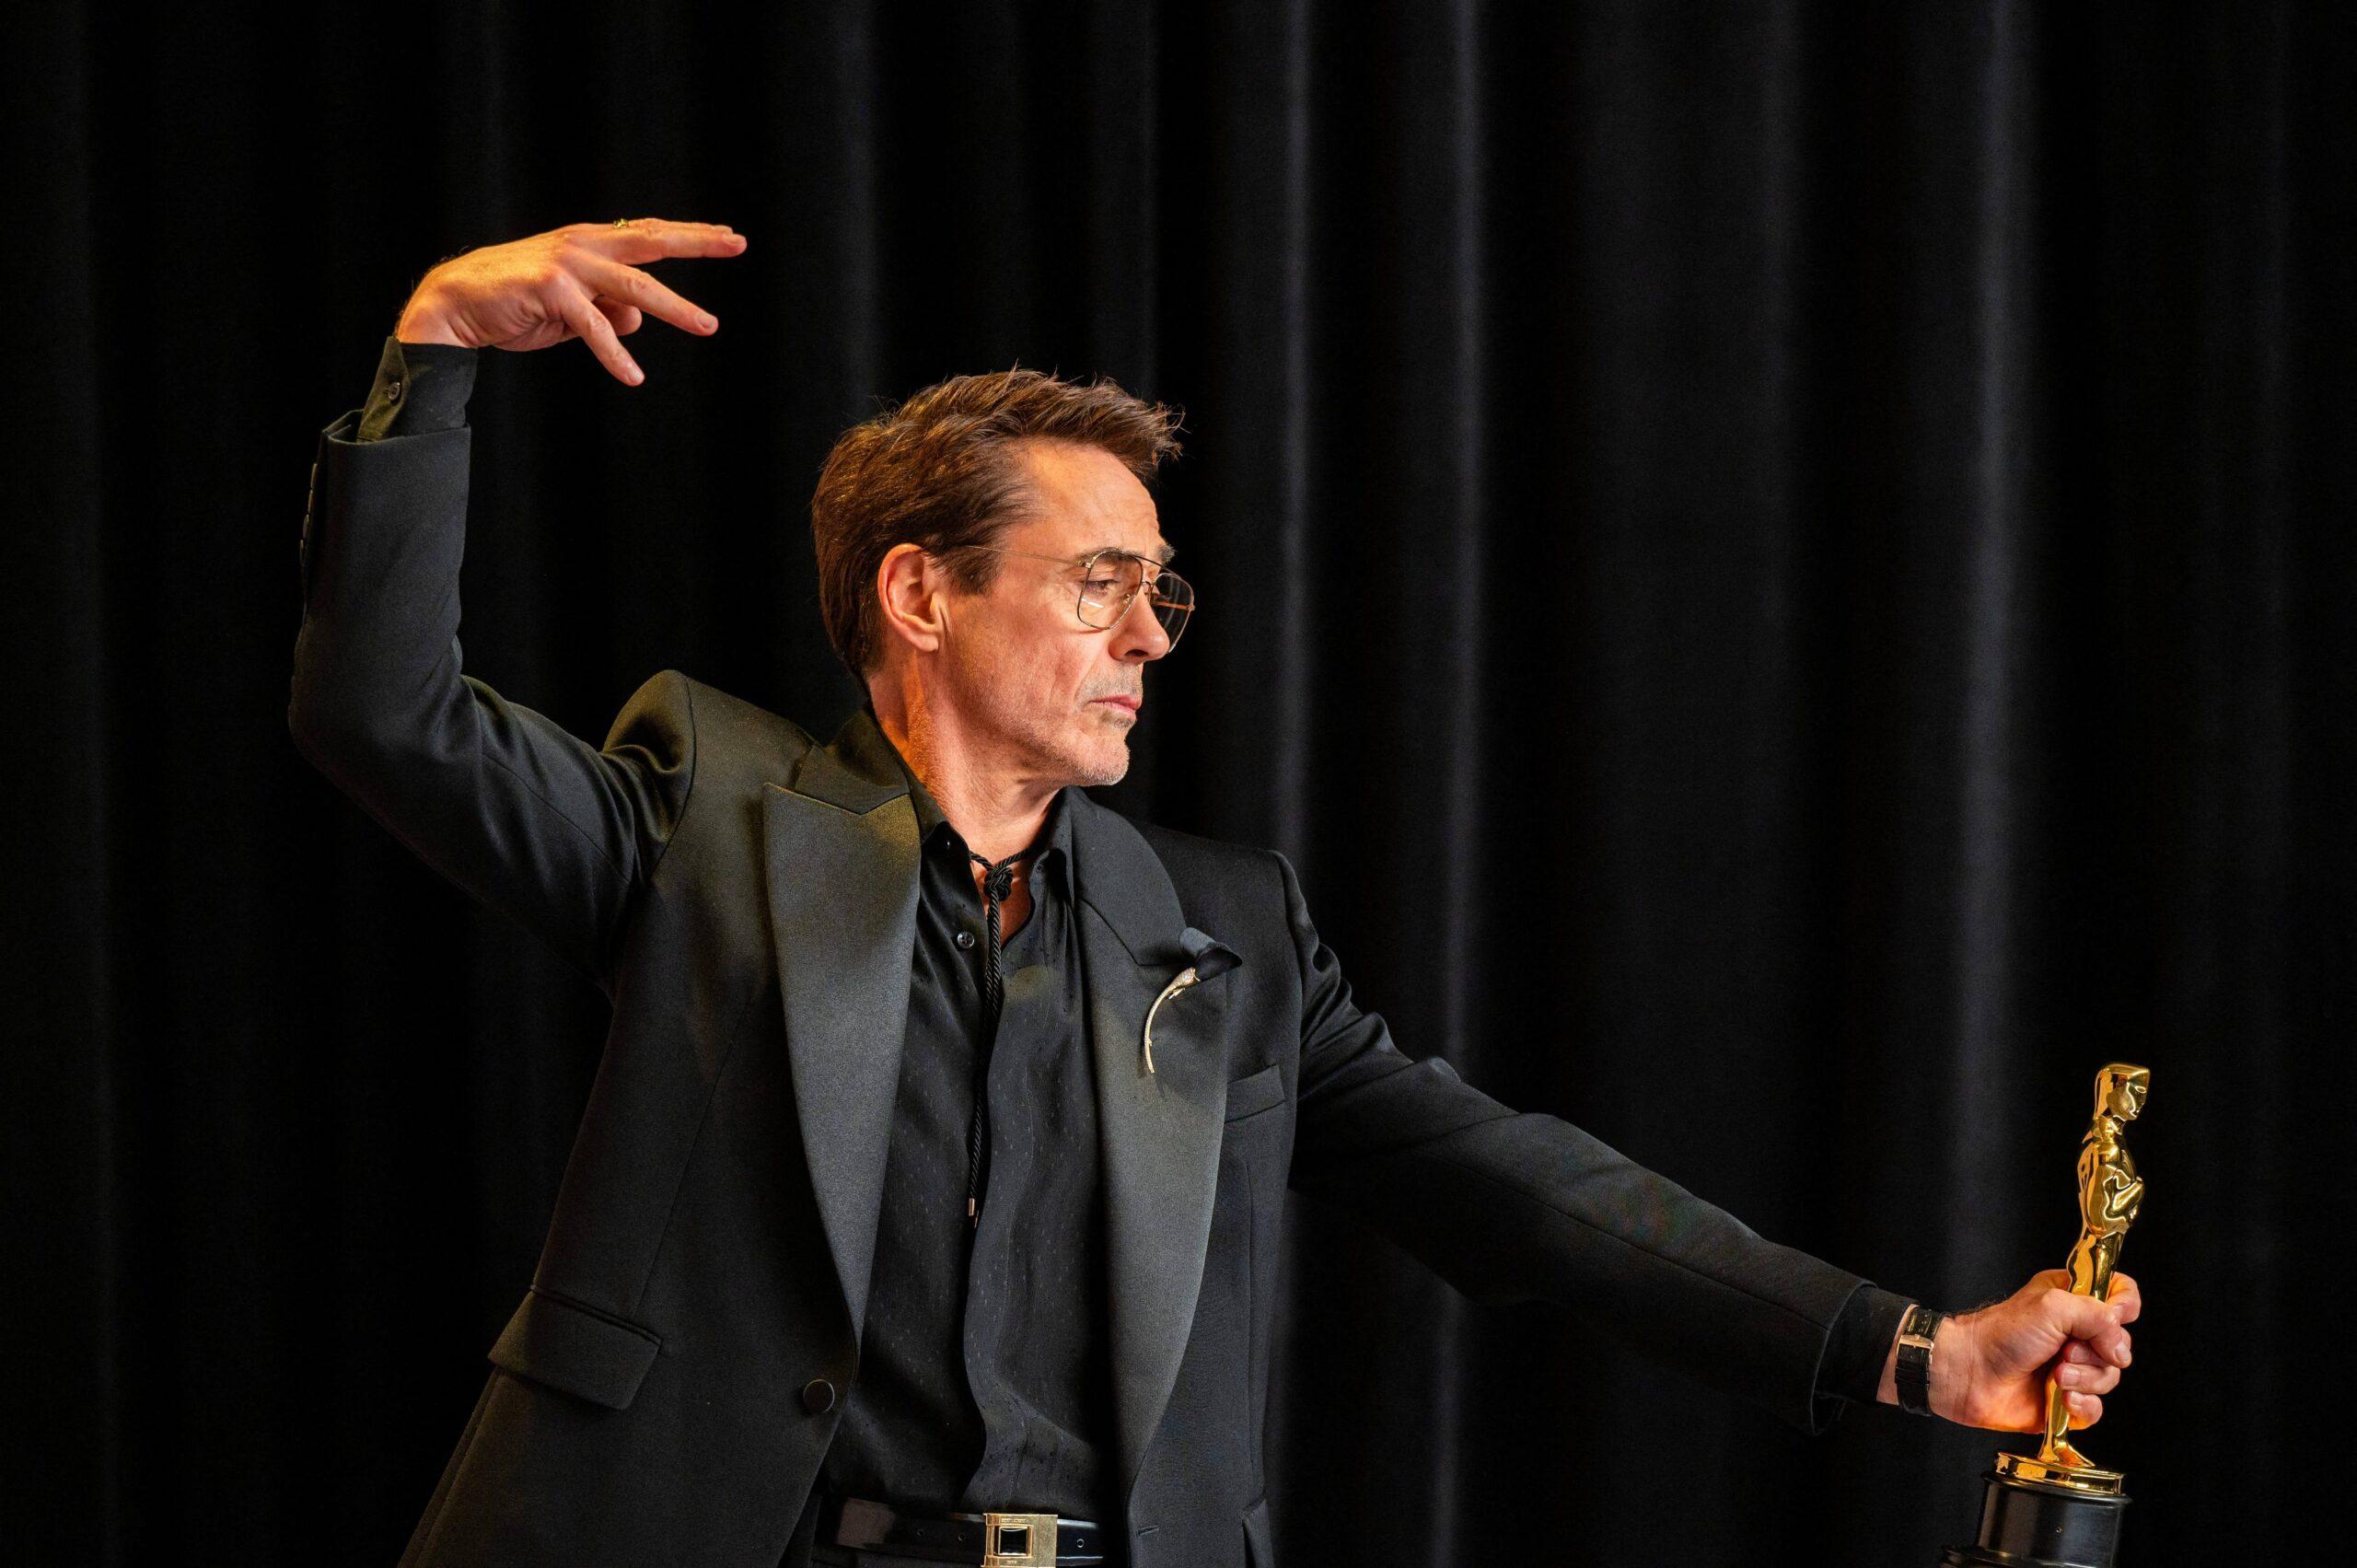 Robert Downey Jr. Reveals If He Would Return To Marvel After Winning An Oscar